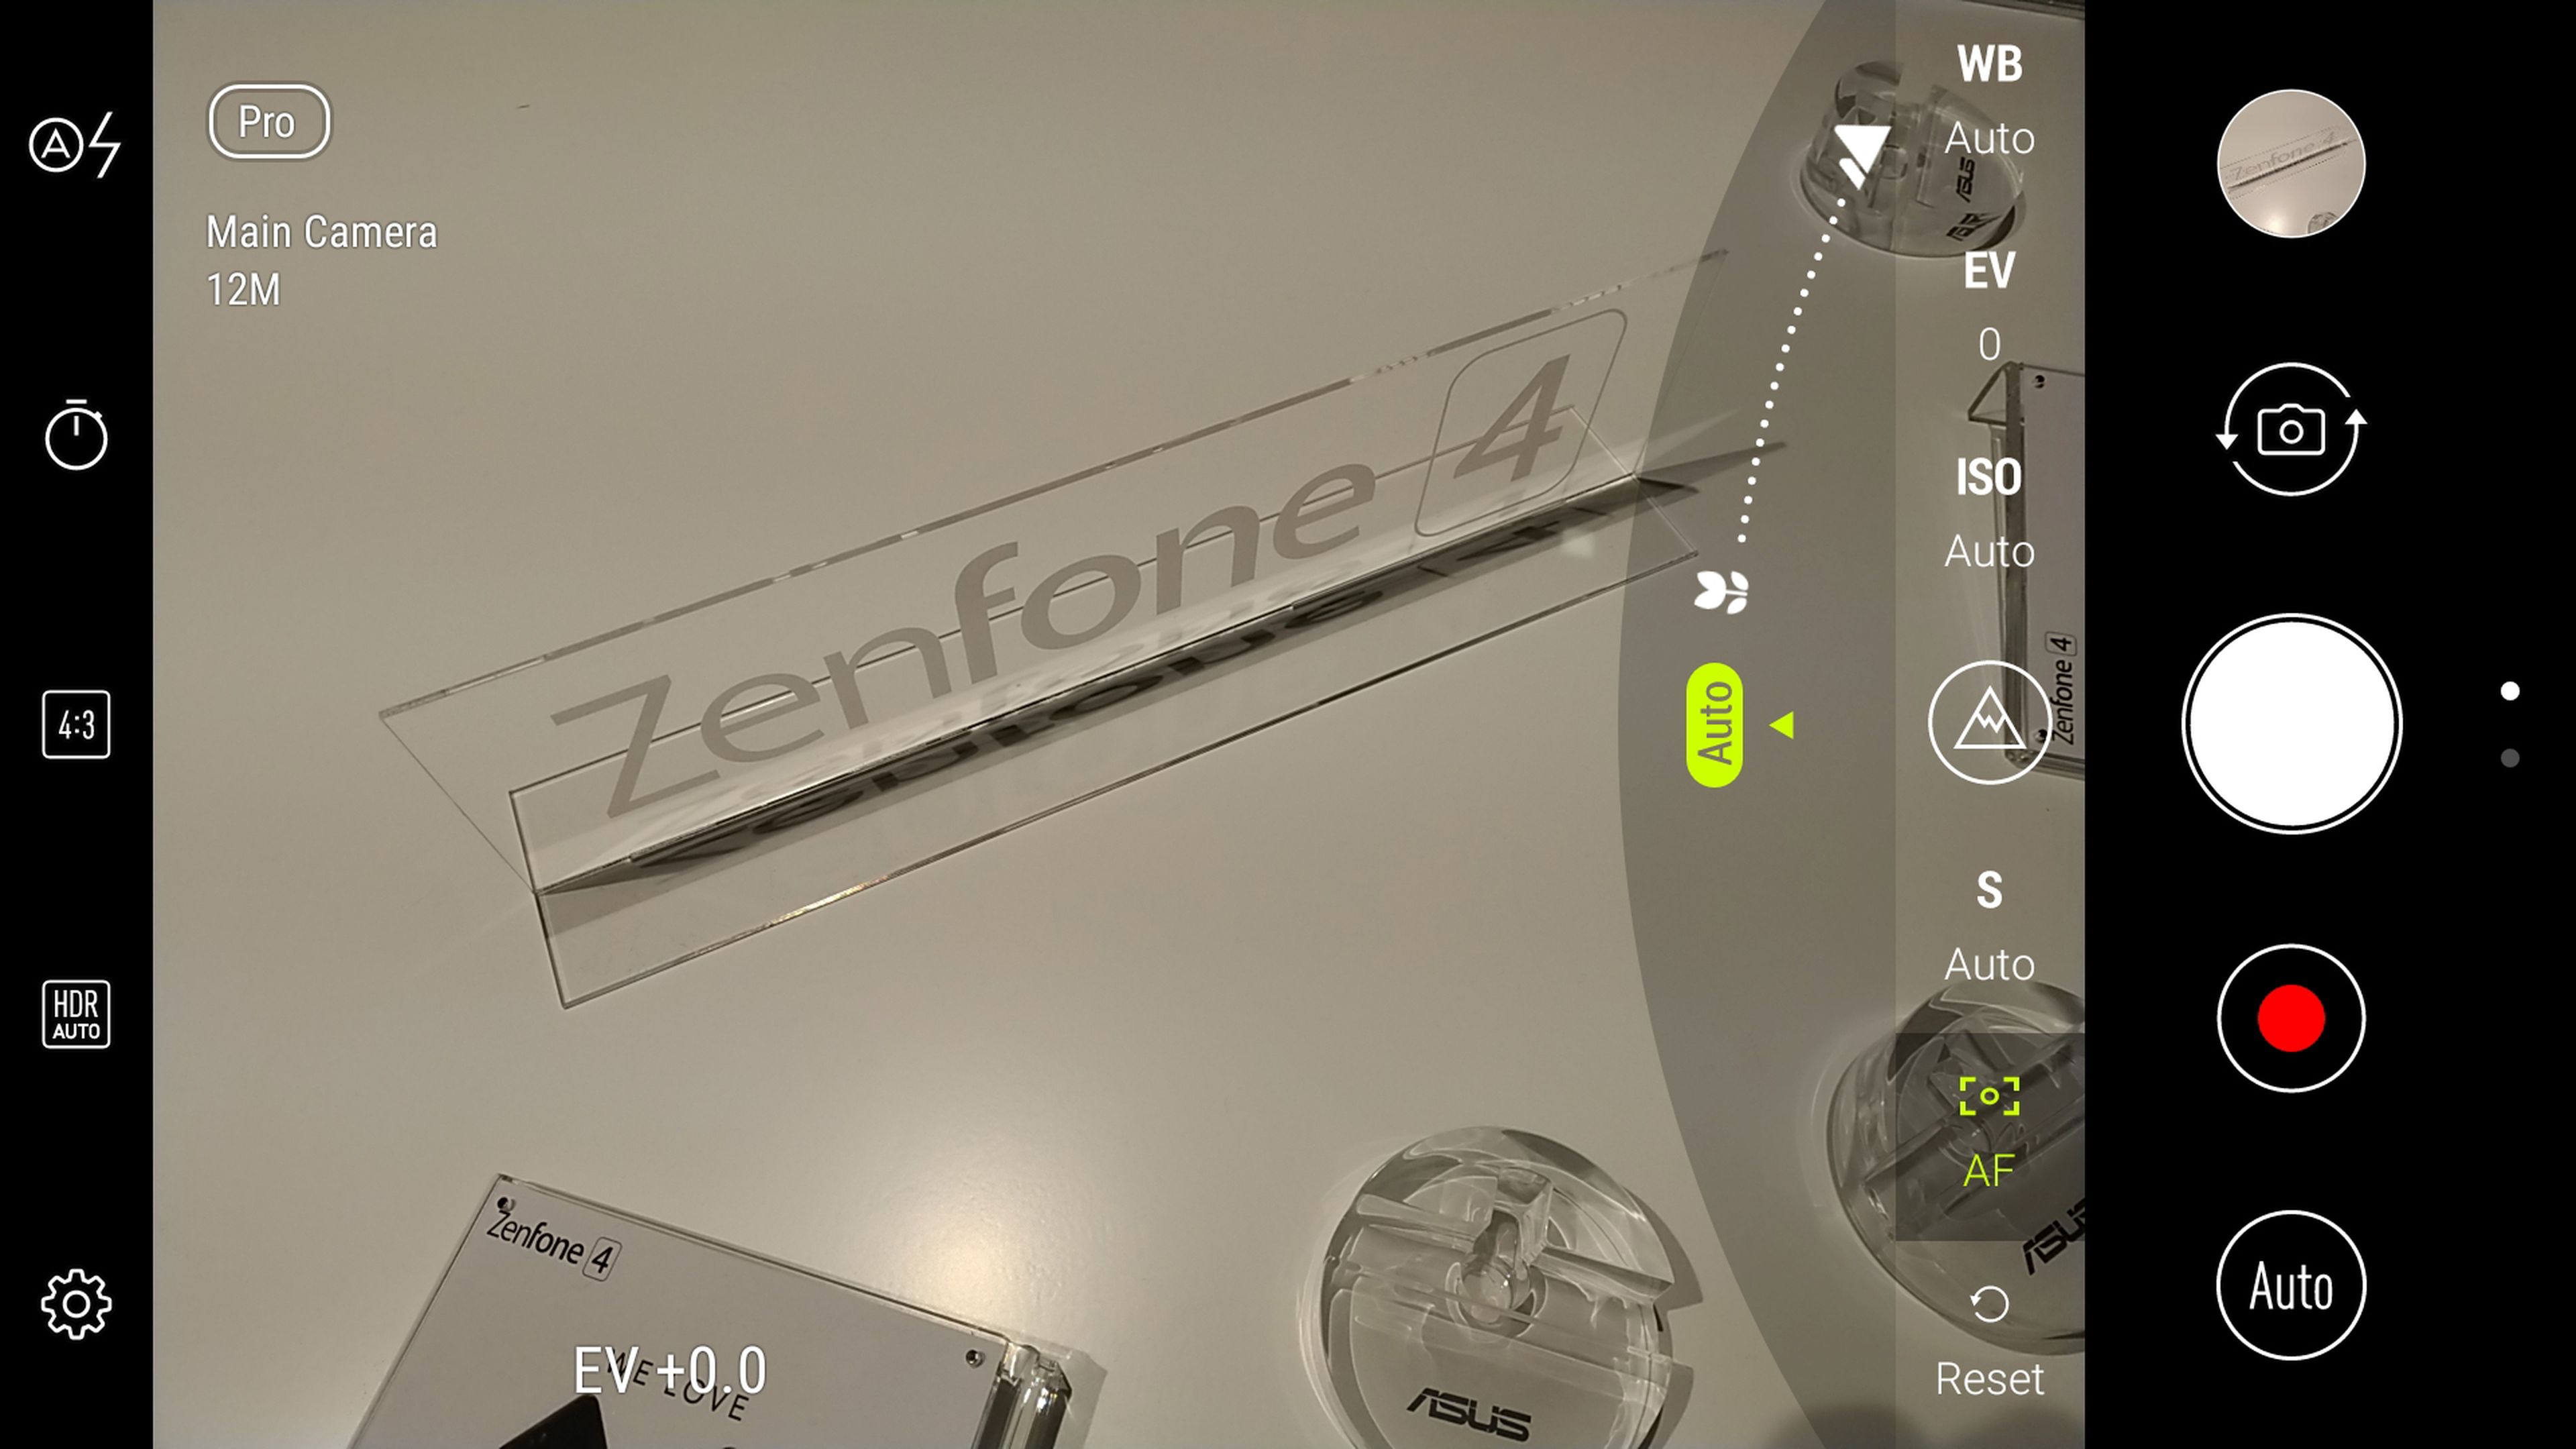 Así es la interfaz de cámara del Asus ZenFone 4